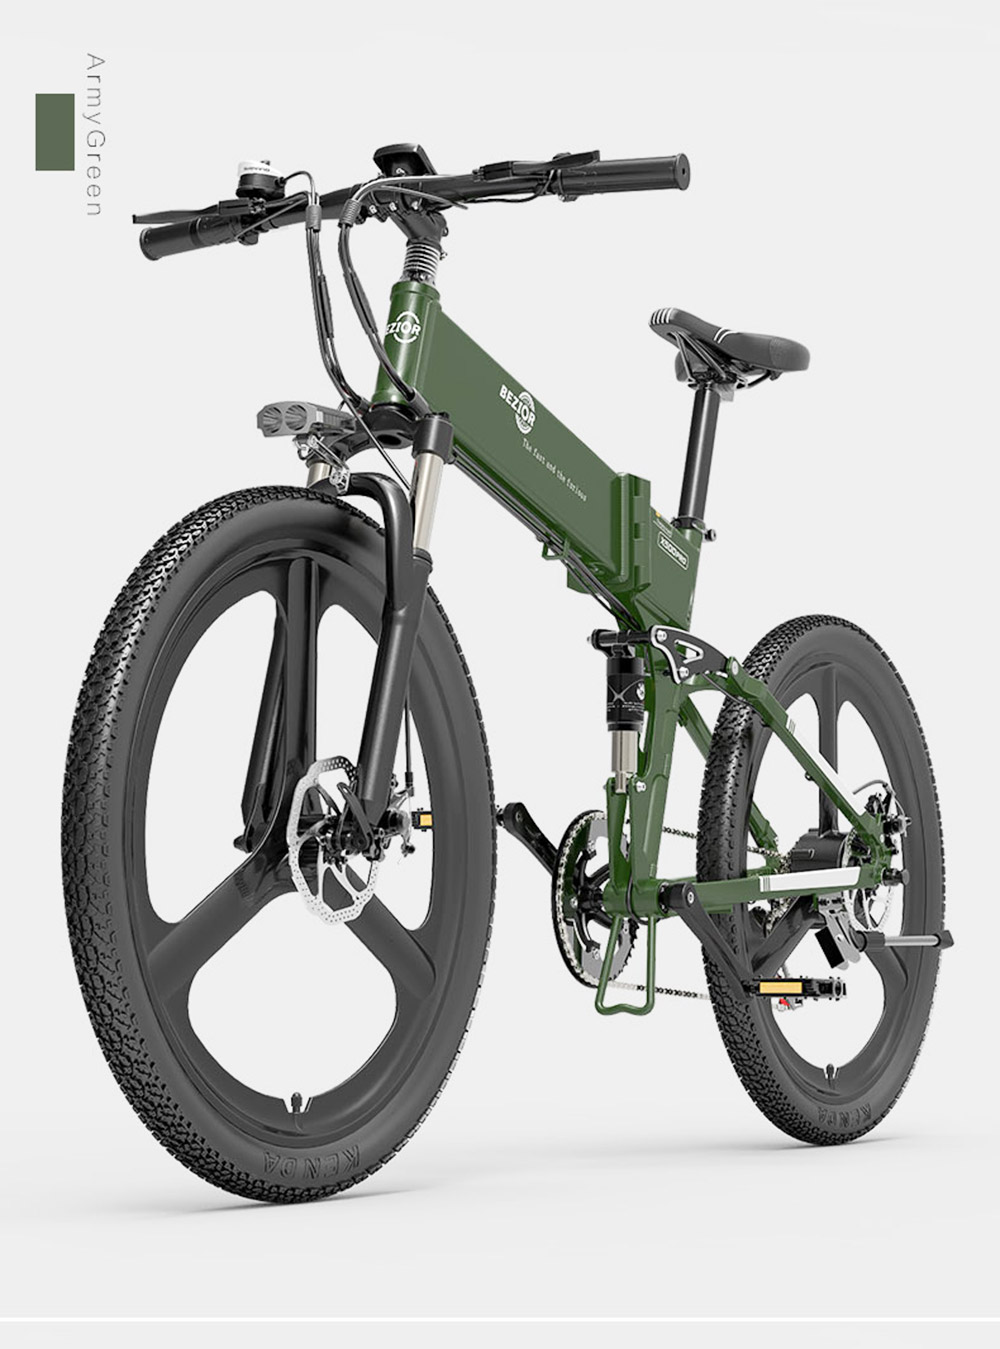 BEZIOR X500PRO Składany elektryczny rower górski 500W 30Km/h Czarny Żółty